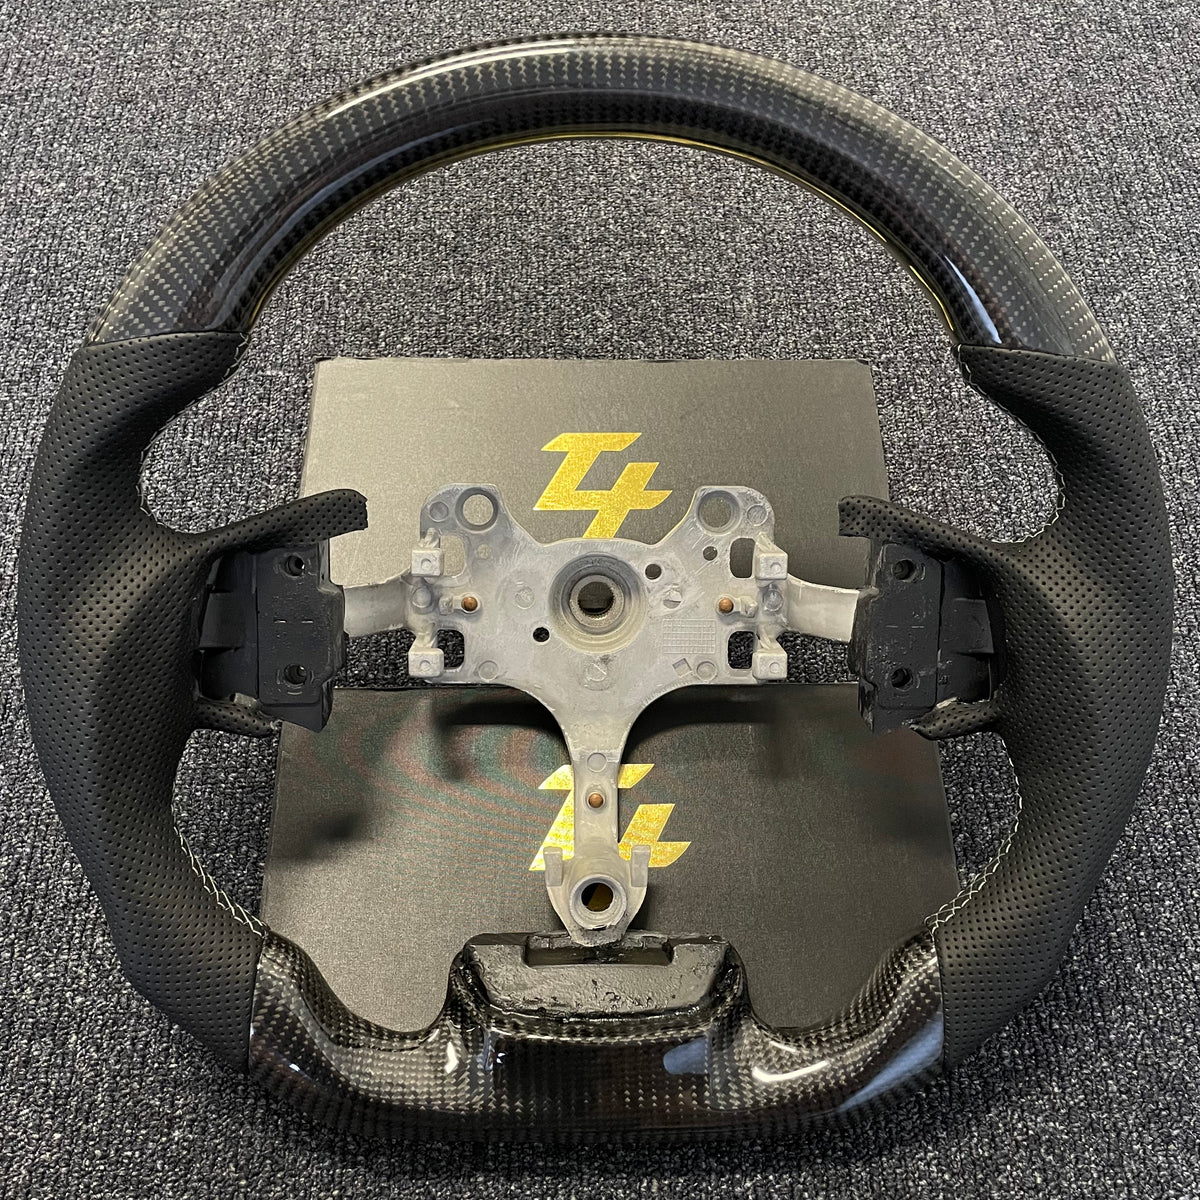 Isuzu D-max 2012-2019 Premium Steering wheel - Perforated Leather